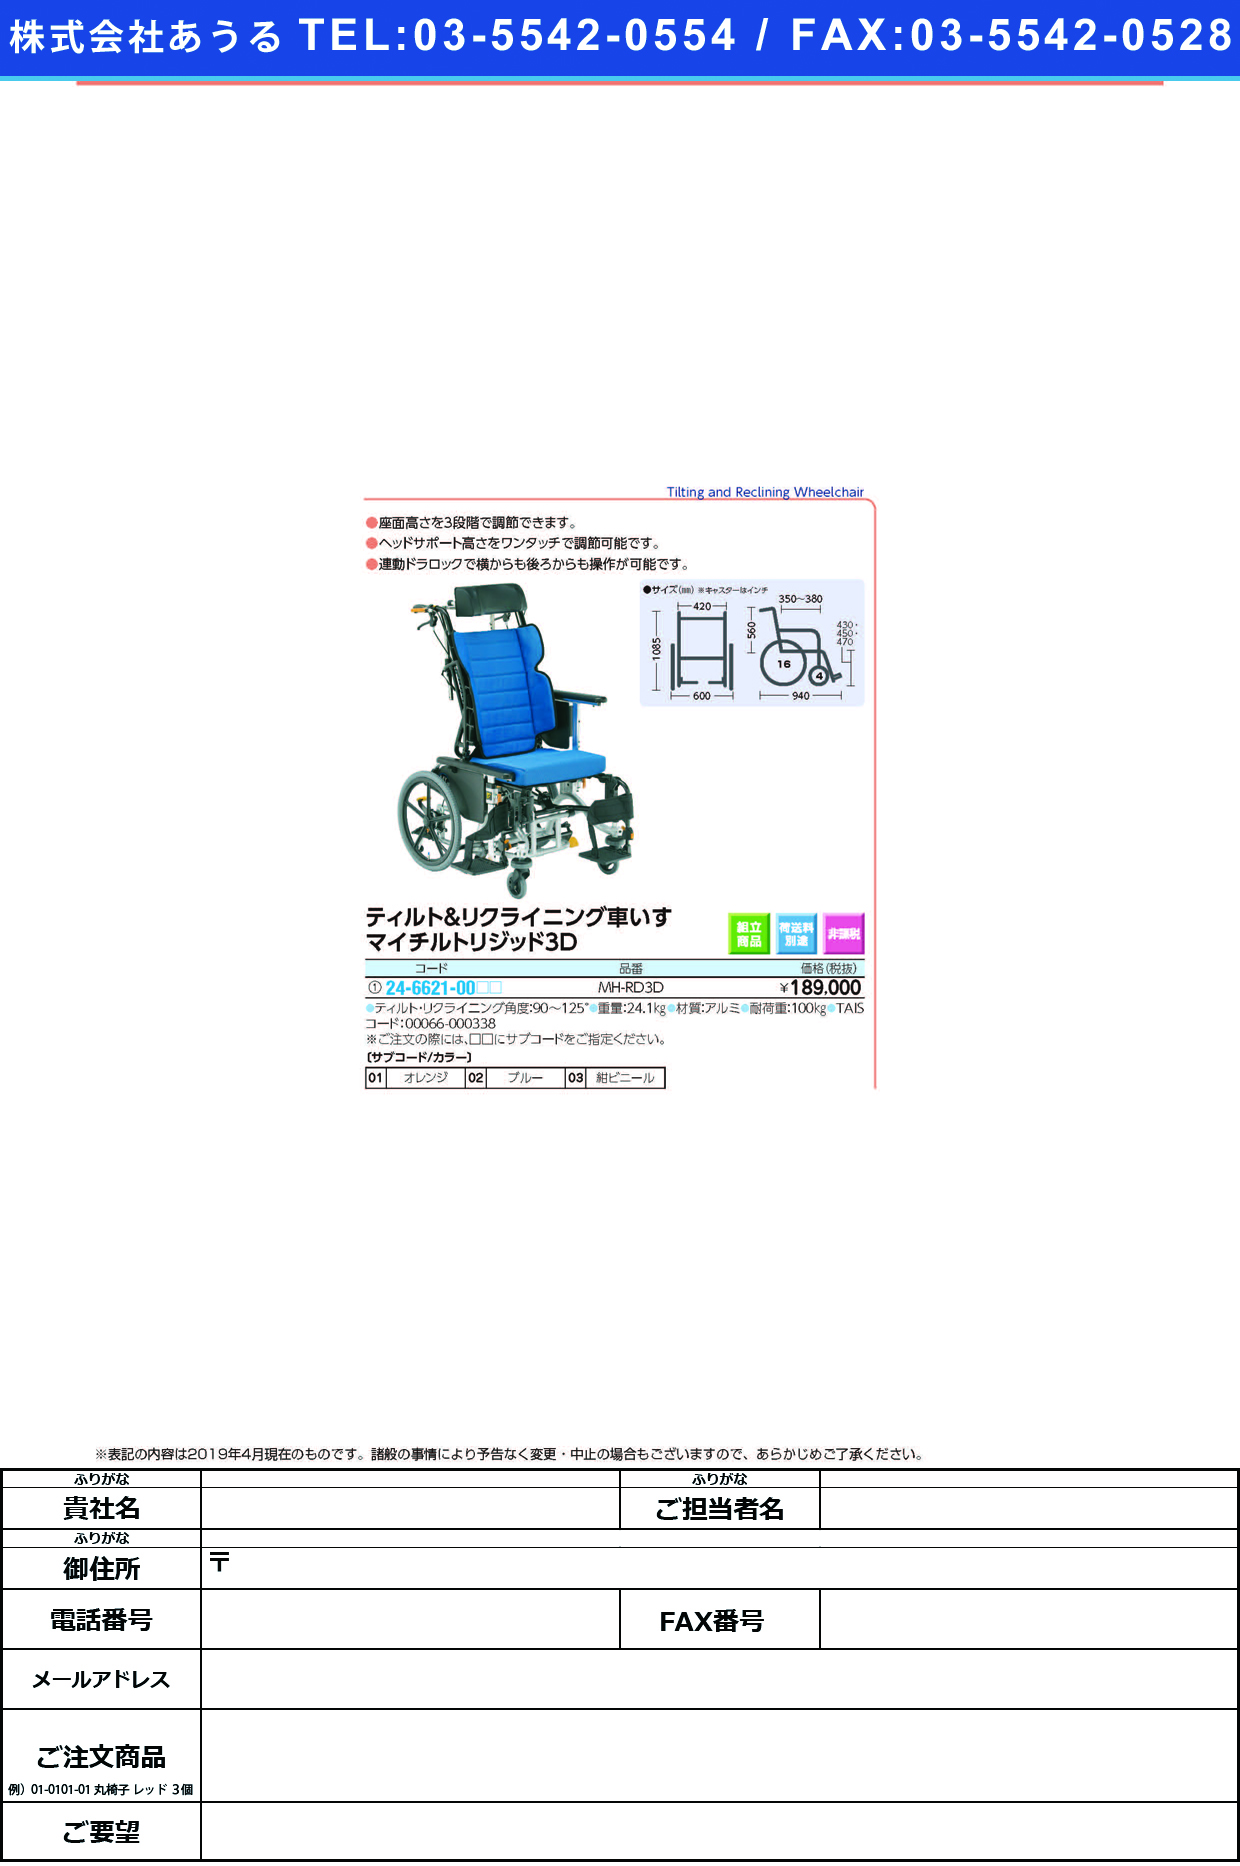 (24-6621-00)車いすマイチルトリジッド３Ｄ MH-RD3D ｸﾙﾏｲｽﾏｲﾁﾙﾄﾘｼﾞｯﾄﾞ3D 紺ビニール（Ｂ－６１）(松永製作所)【1台単位】【2019年カタログ商品】